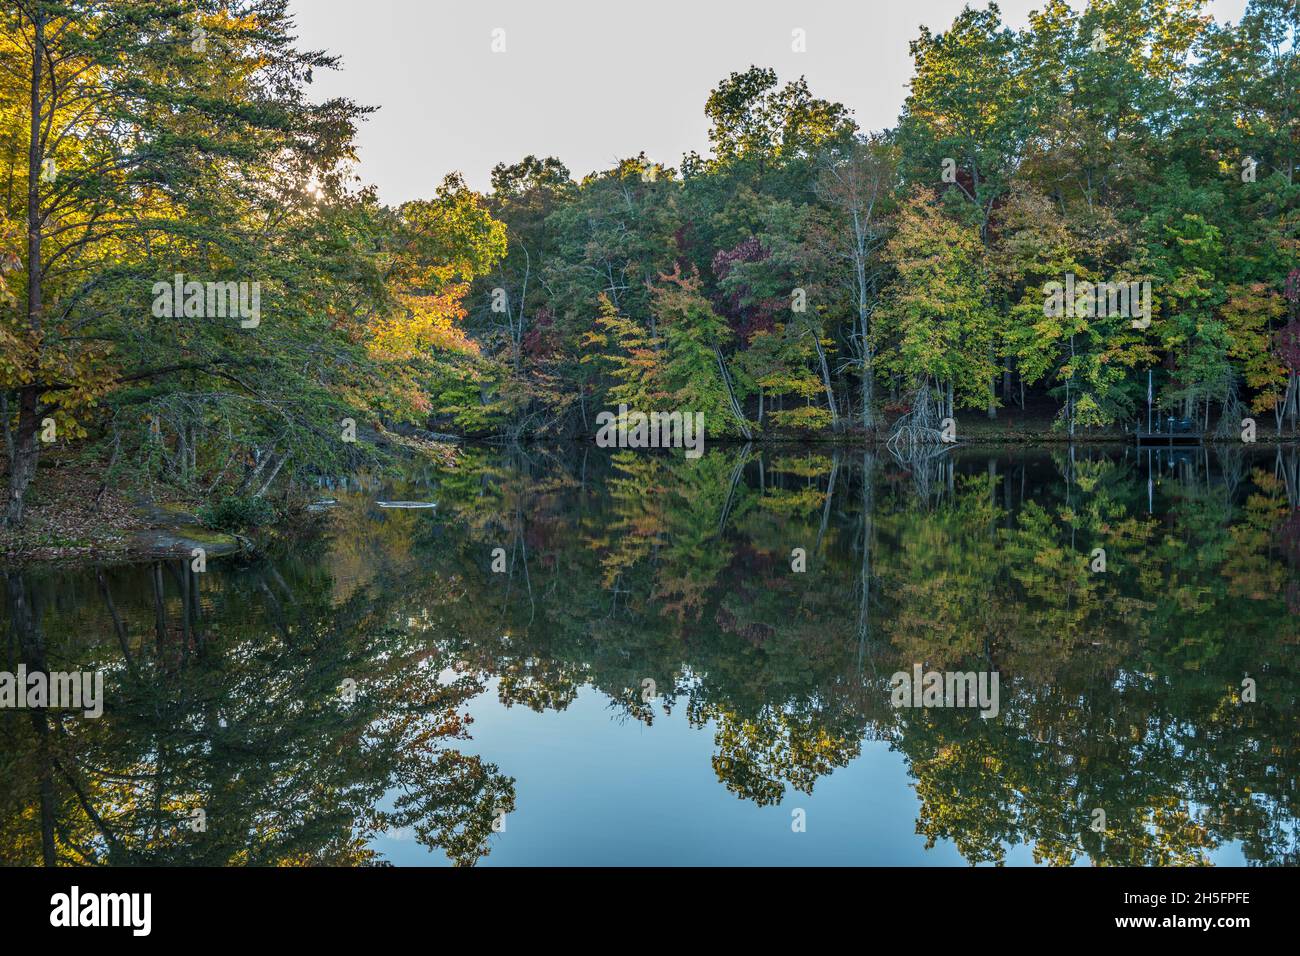 Pittoresco scenario di alberi luminosi e colorati che si specchiano nella quiete del lago mentre il sole sta scendendo evidenziando le cime degli alberi in Foto Stock